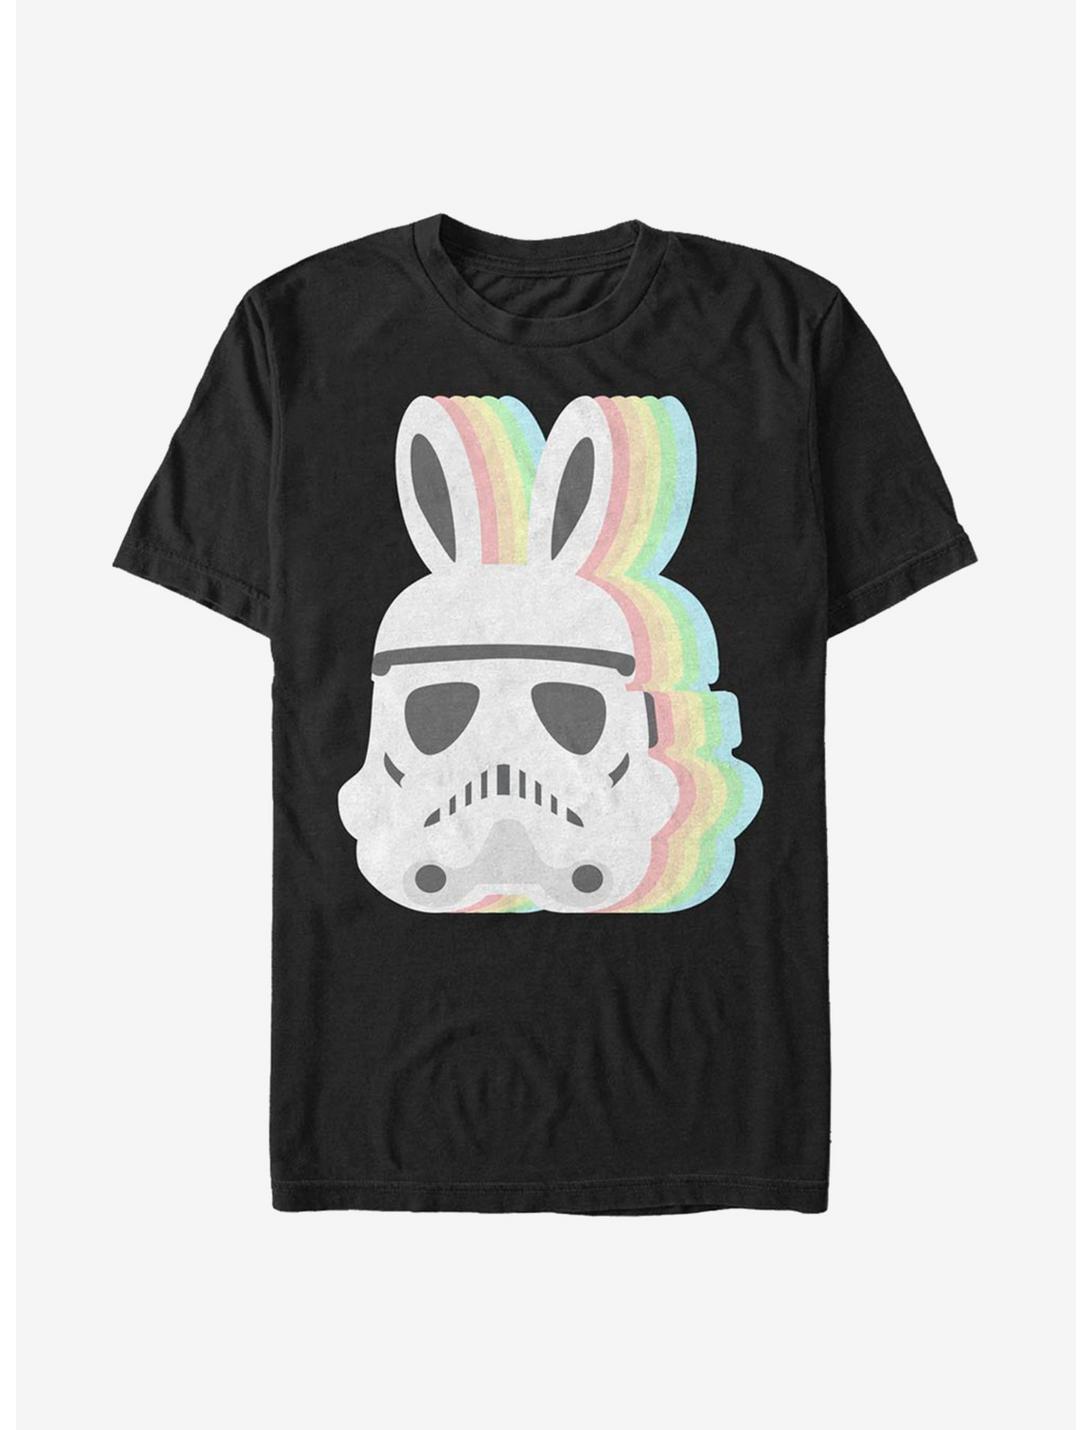 Star Wars Stormtrooper Bunny T-Shirt, BLACK, hi-res